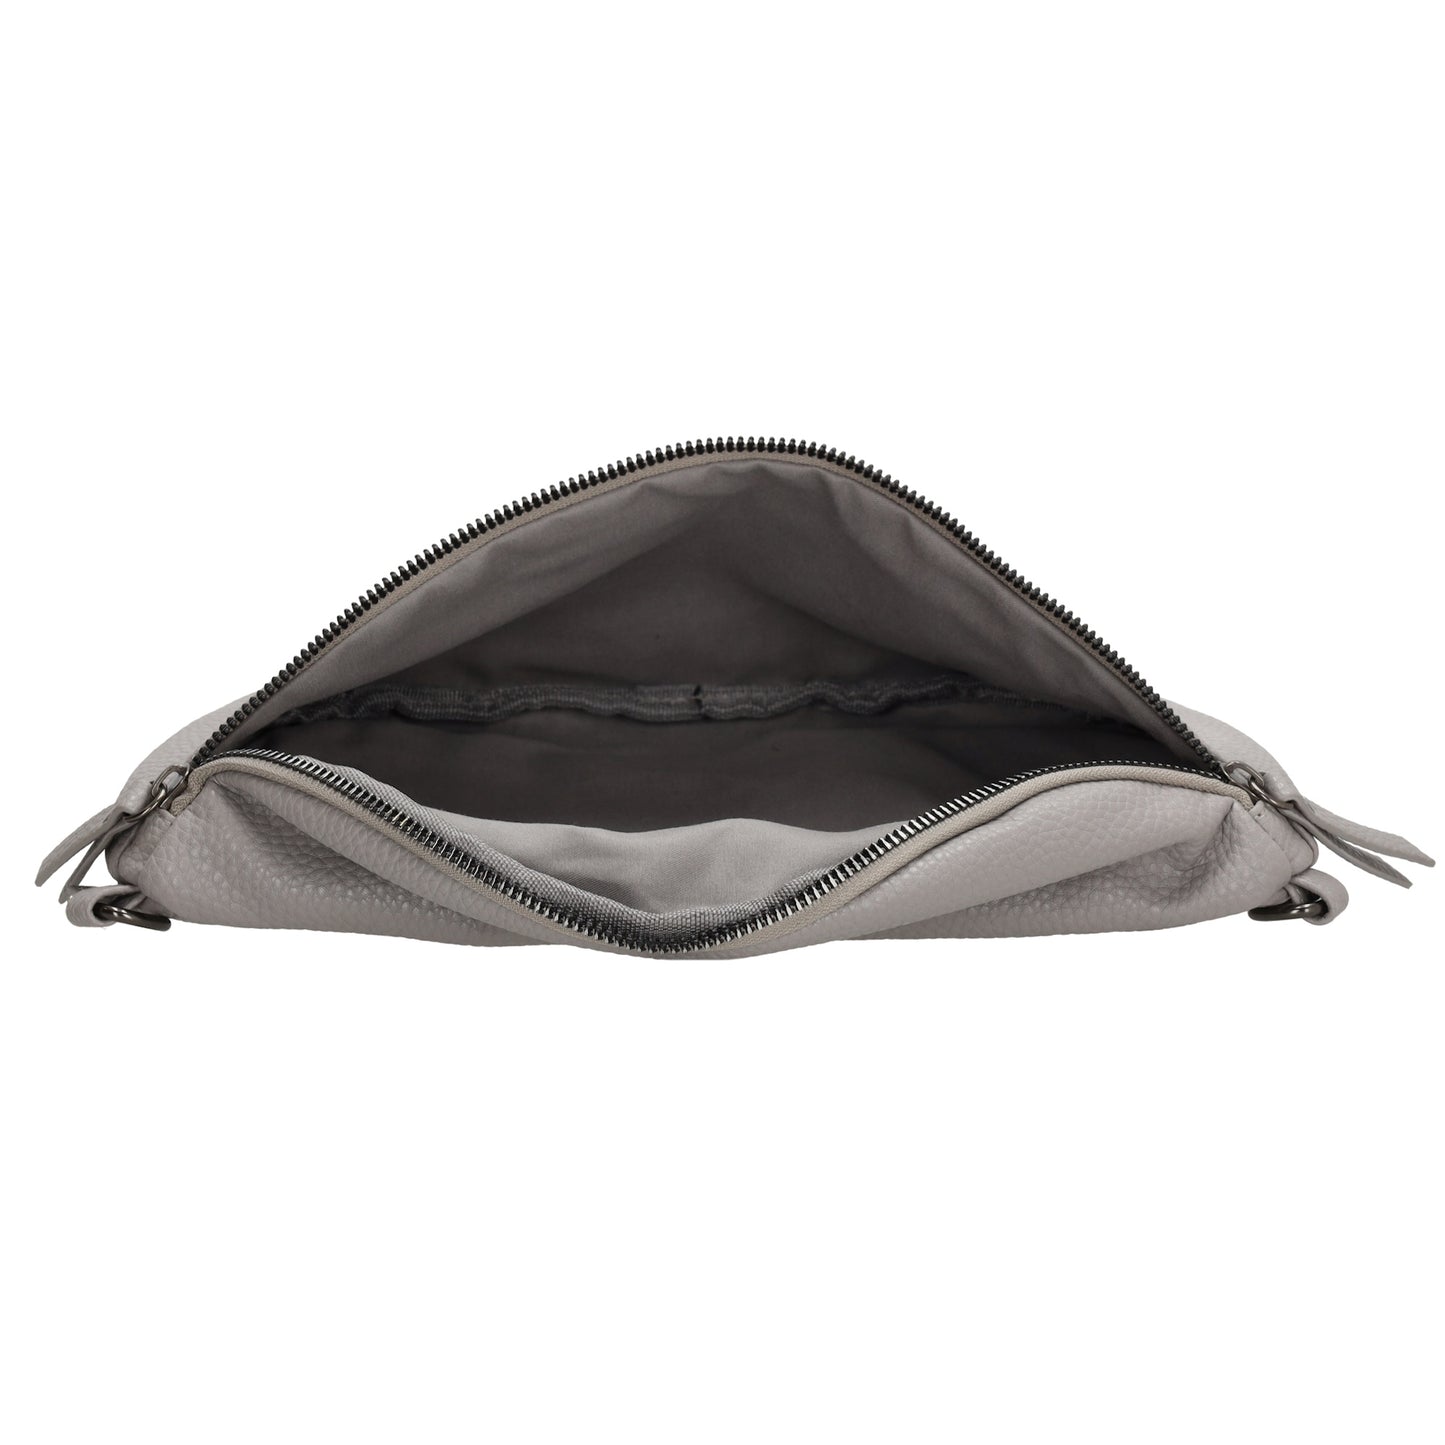 Bodybag 27,5 x 17cm in Lederoptik Grau